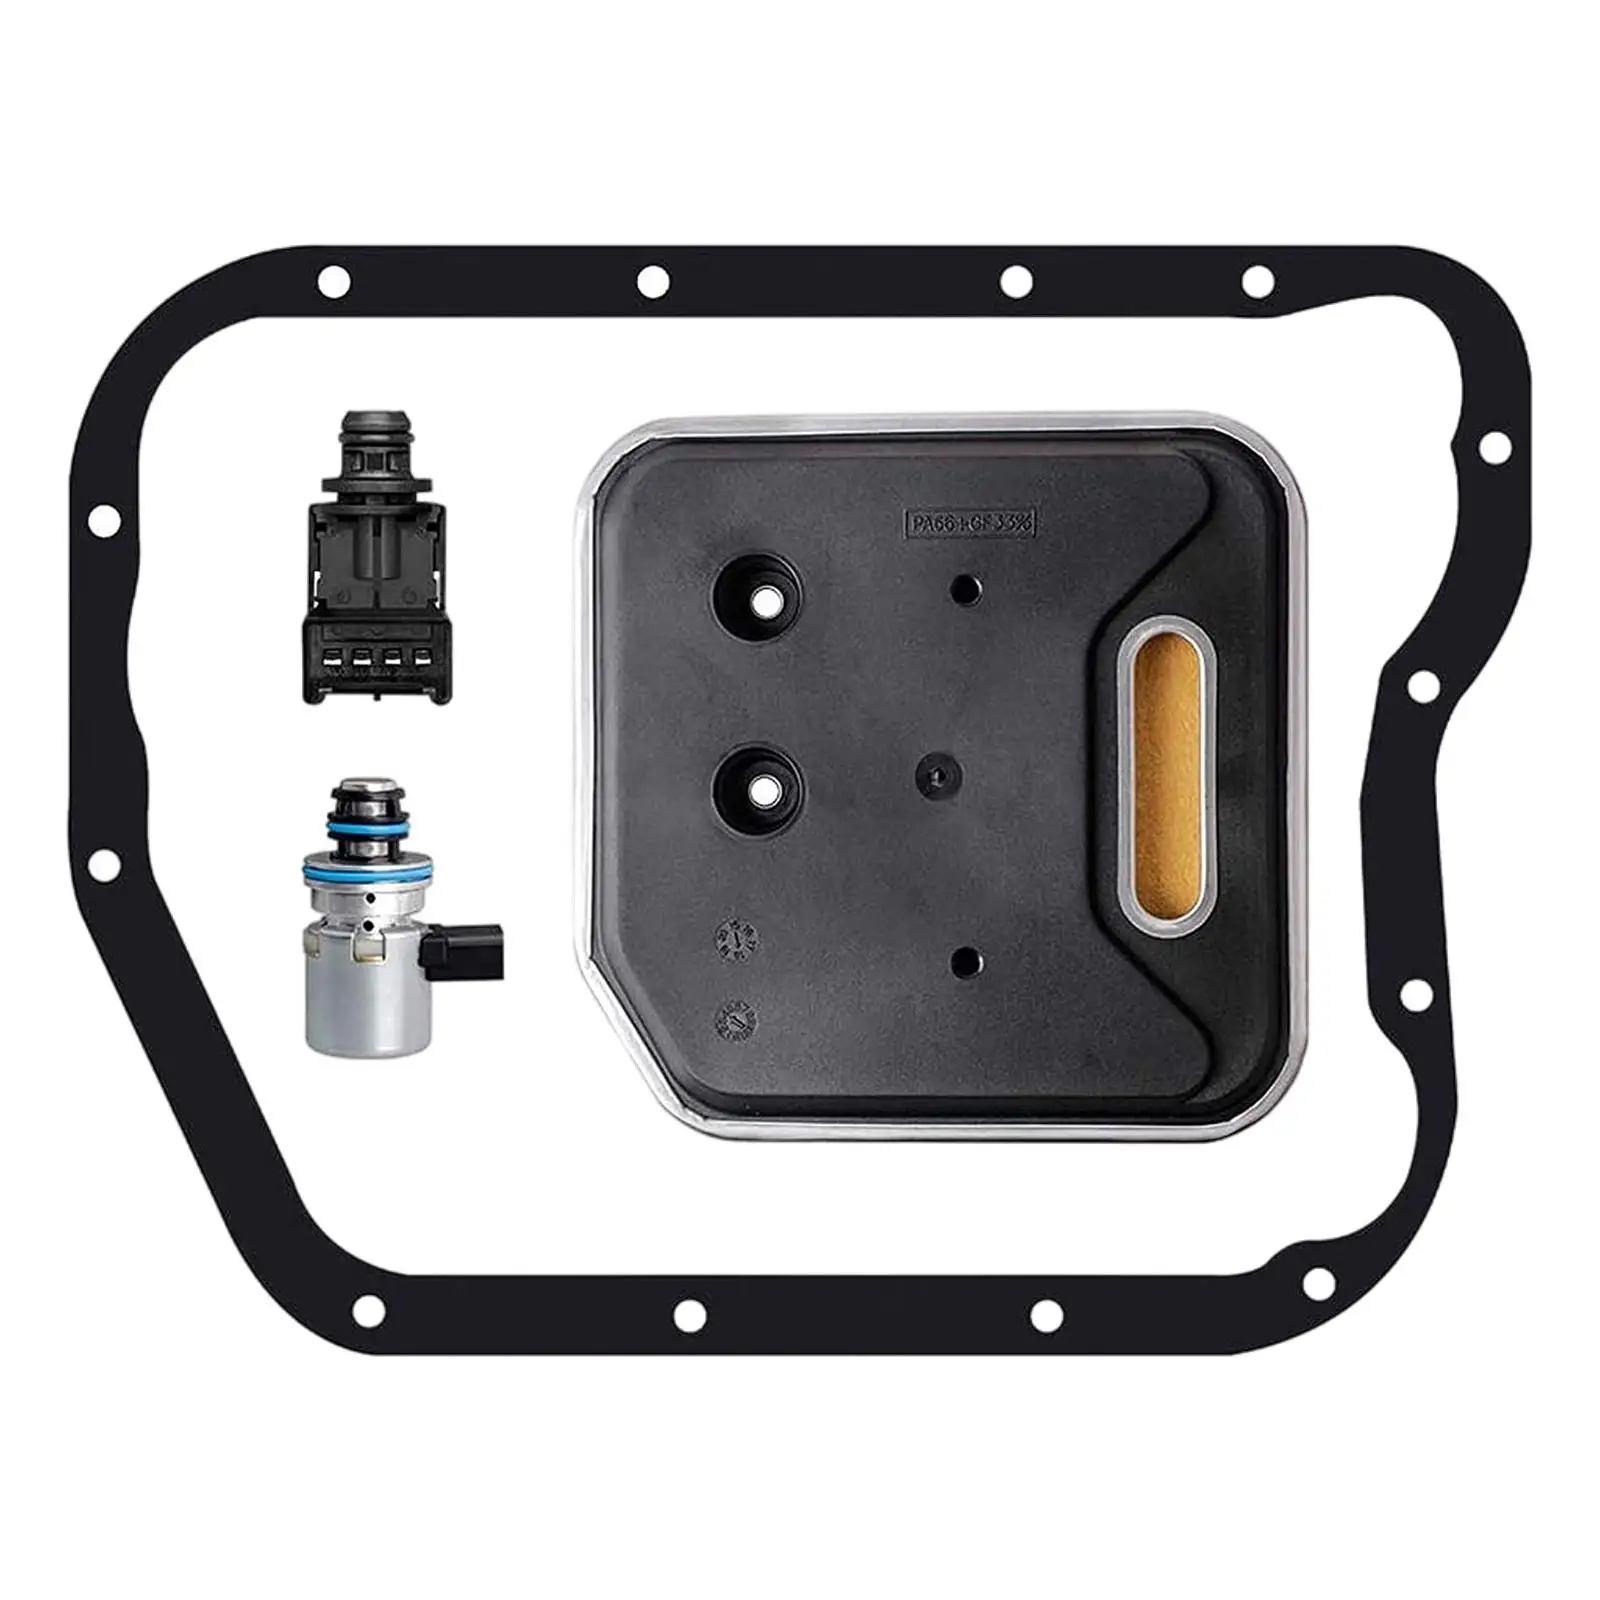 A500 46RE A518 Transmission Governor Pressure Sensor & Solenoid Filter Kit for Jeep